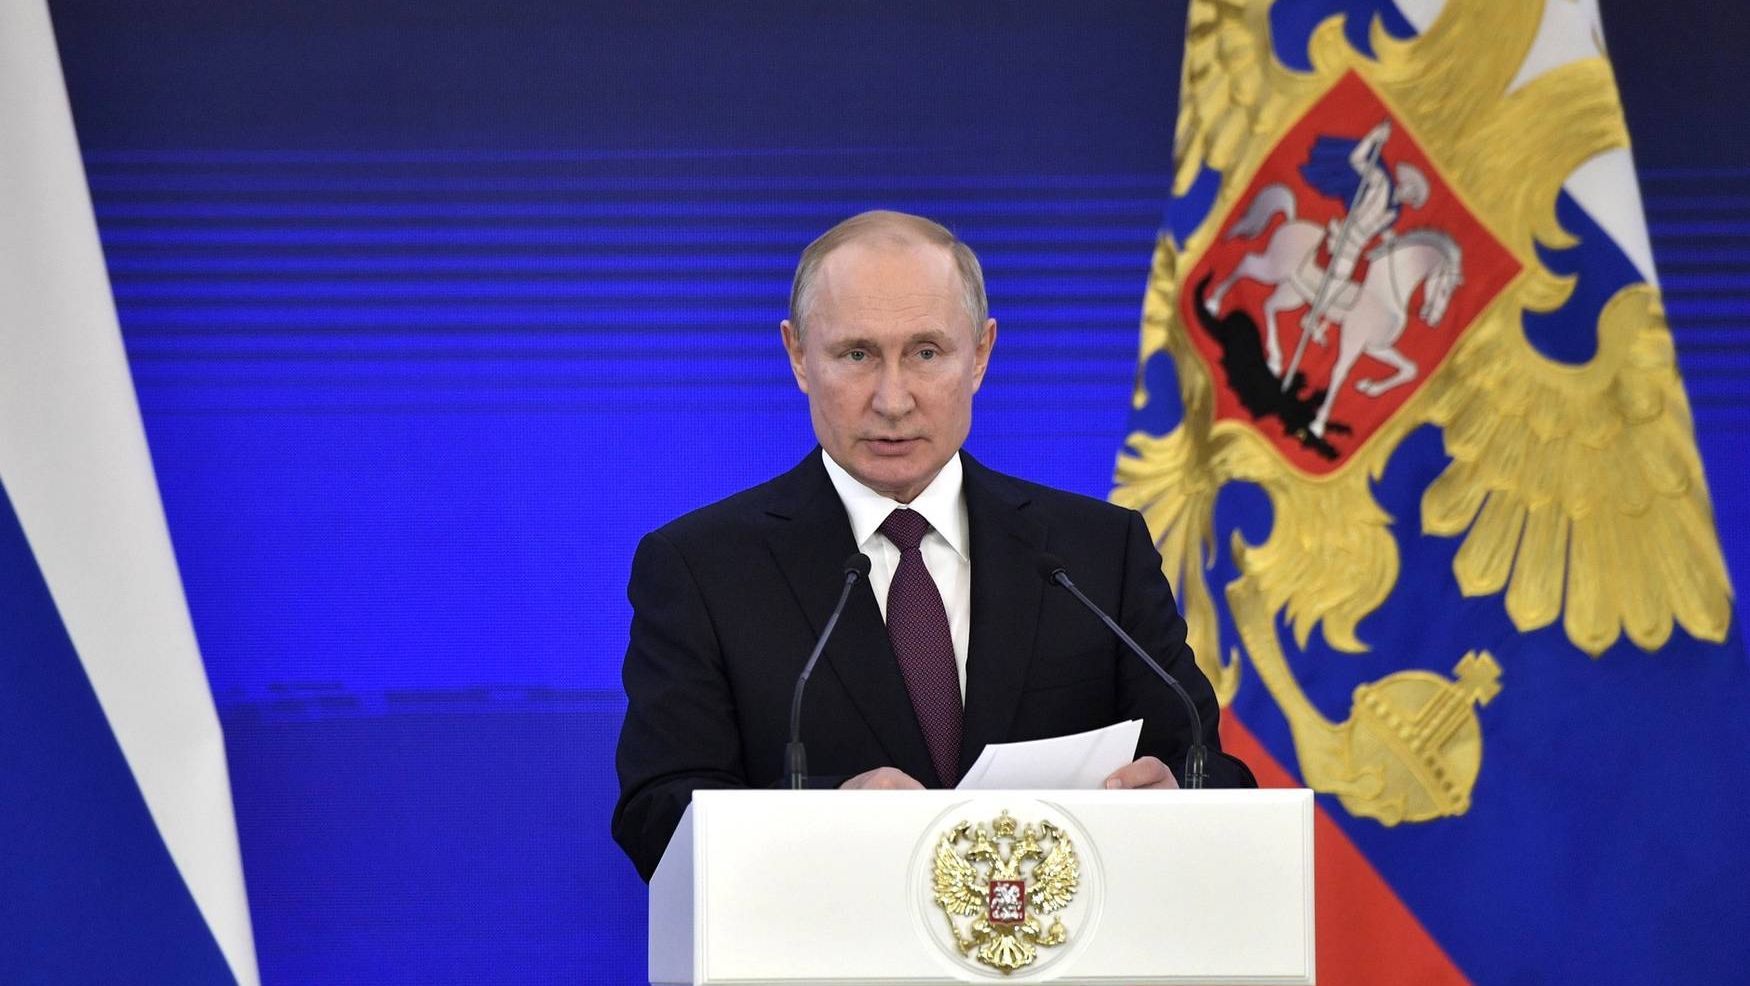 Президент России отметил работу сотрудников скорой медицинской помощи в борьбе с COVID-19